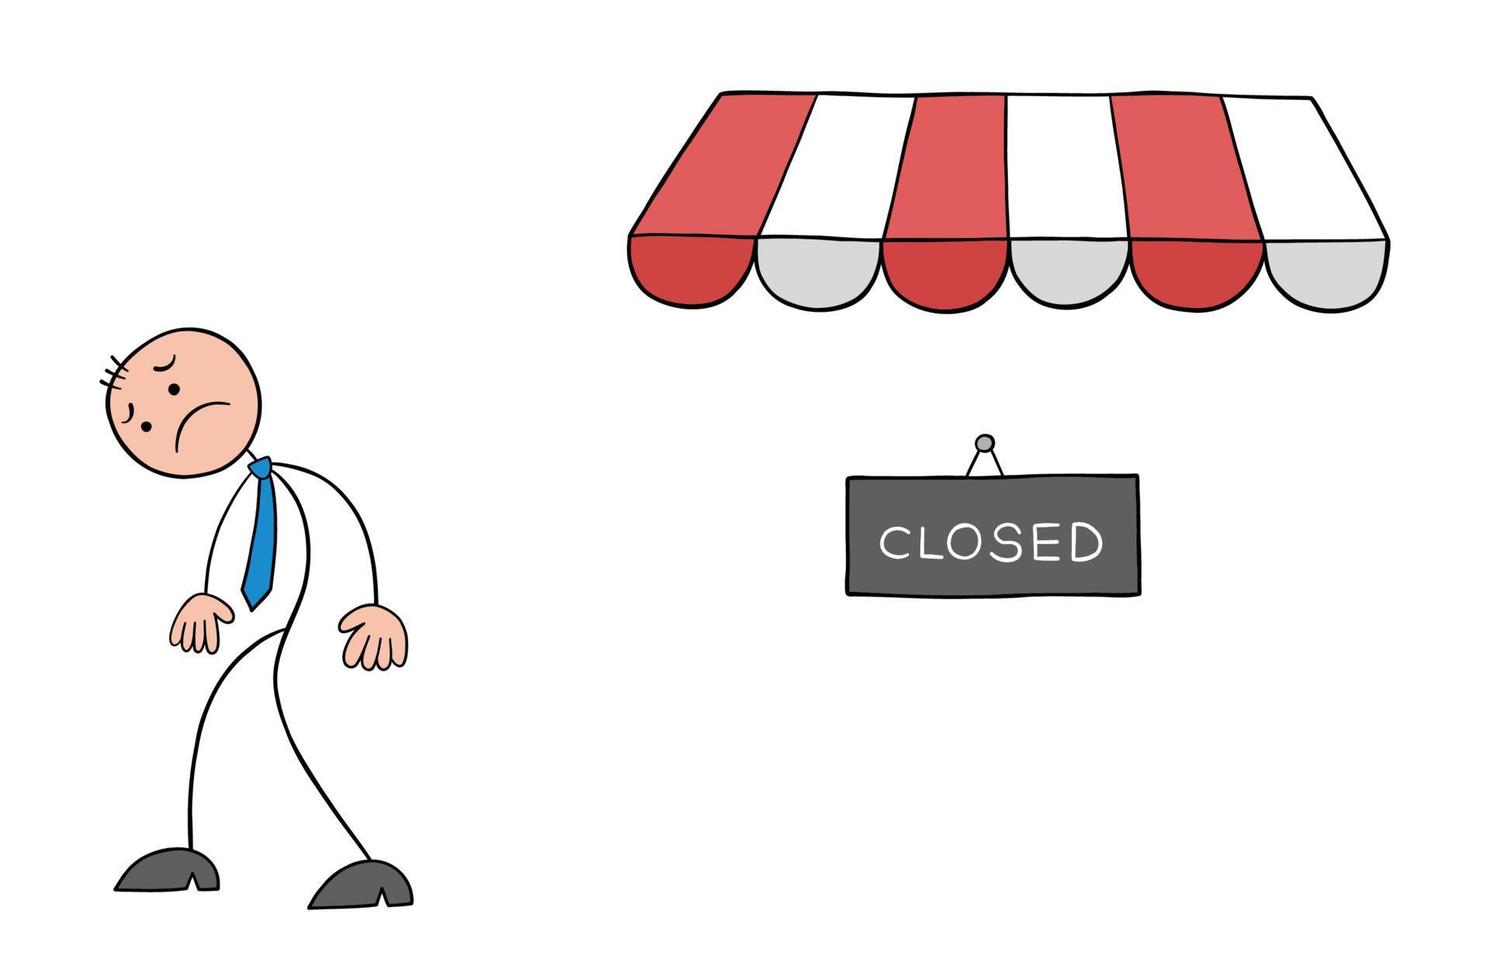 empresário de stickman retorna chateado porque a loja que ele veio para fazer compras está fechada, ilustração em vetor de desenho animado de contorno desenhado à mão